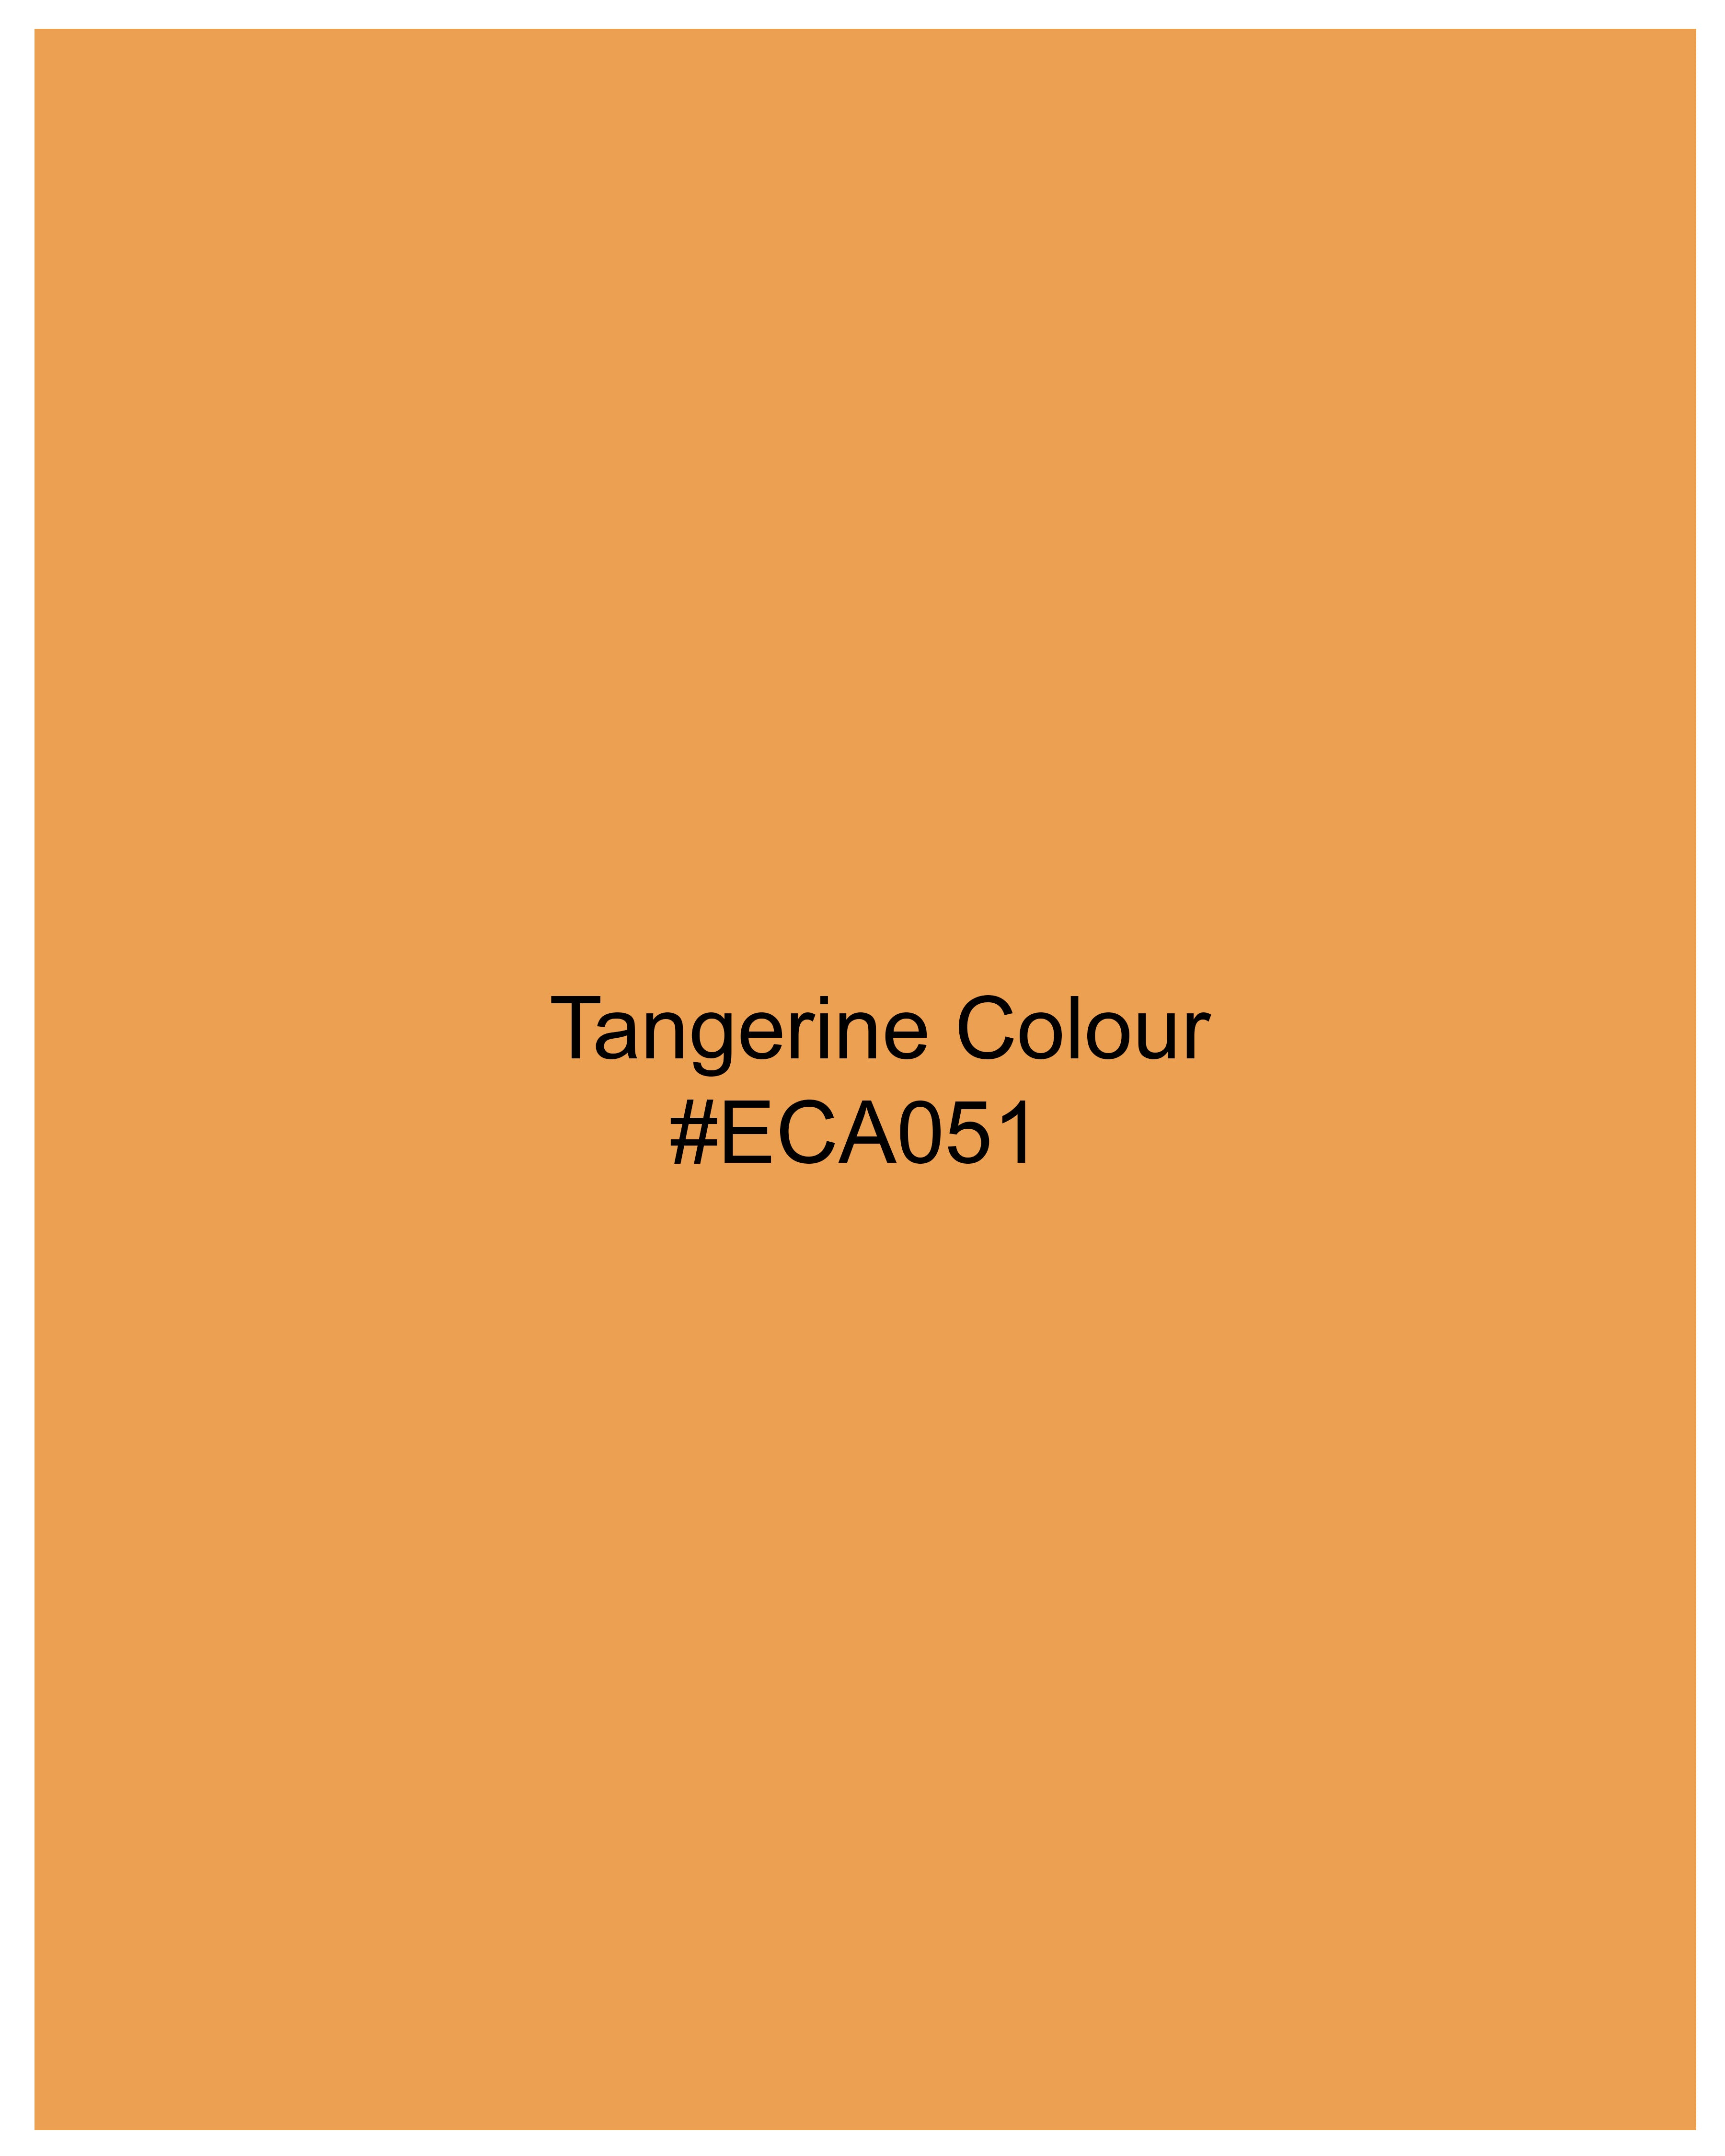 Tangerine Orange Luxurious Line Kurta Shirt 9077-KS-38, 9077-KS-H-38, 9077-KS-39, 9077-KS-H-39, 9077-KS-40, 9077-KS-H-40, 9077-KS-42, 9077-KS-H-42, 9077-KS-44, 9077-KS-H-44, 9077-KS-46, 9077-KS-H-46, 9077-KS-48, 9077-KS-H-48, 9077-KS-50, 9077-KS-H-50, 9077-KS-52, 9077-KS-H-52